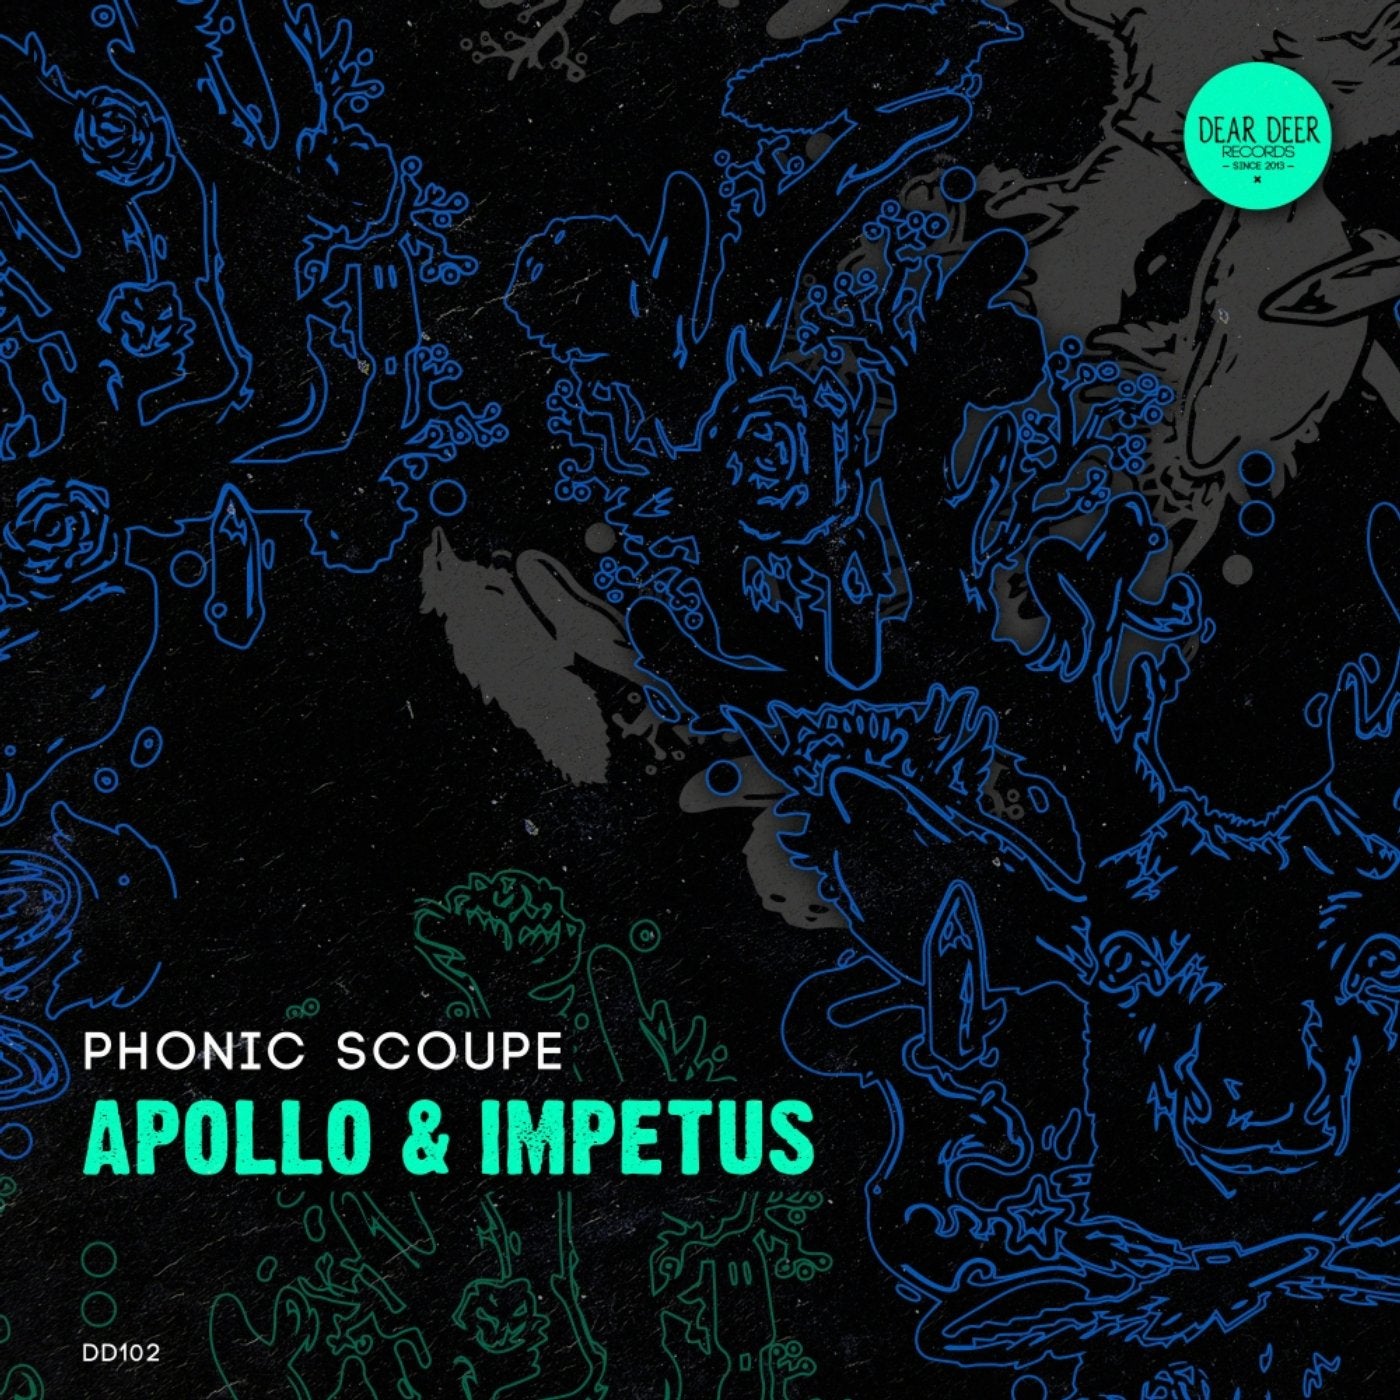 Apollo & Impetus